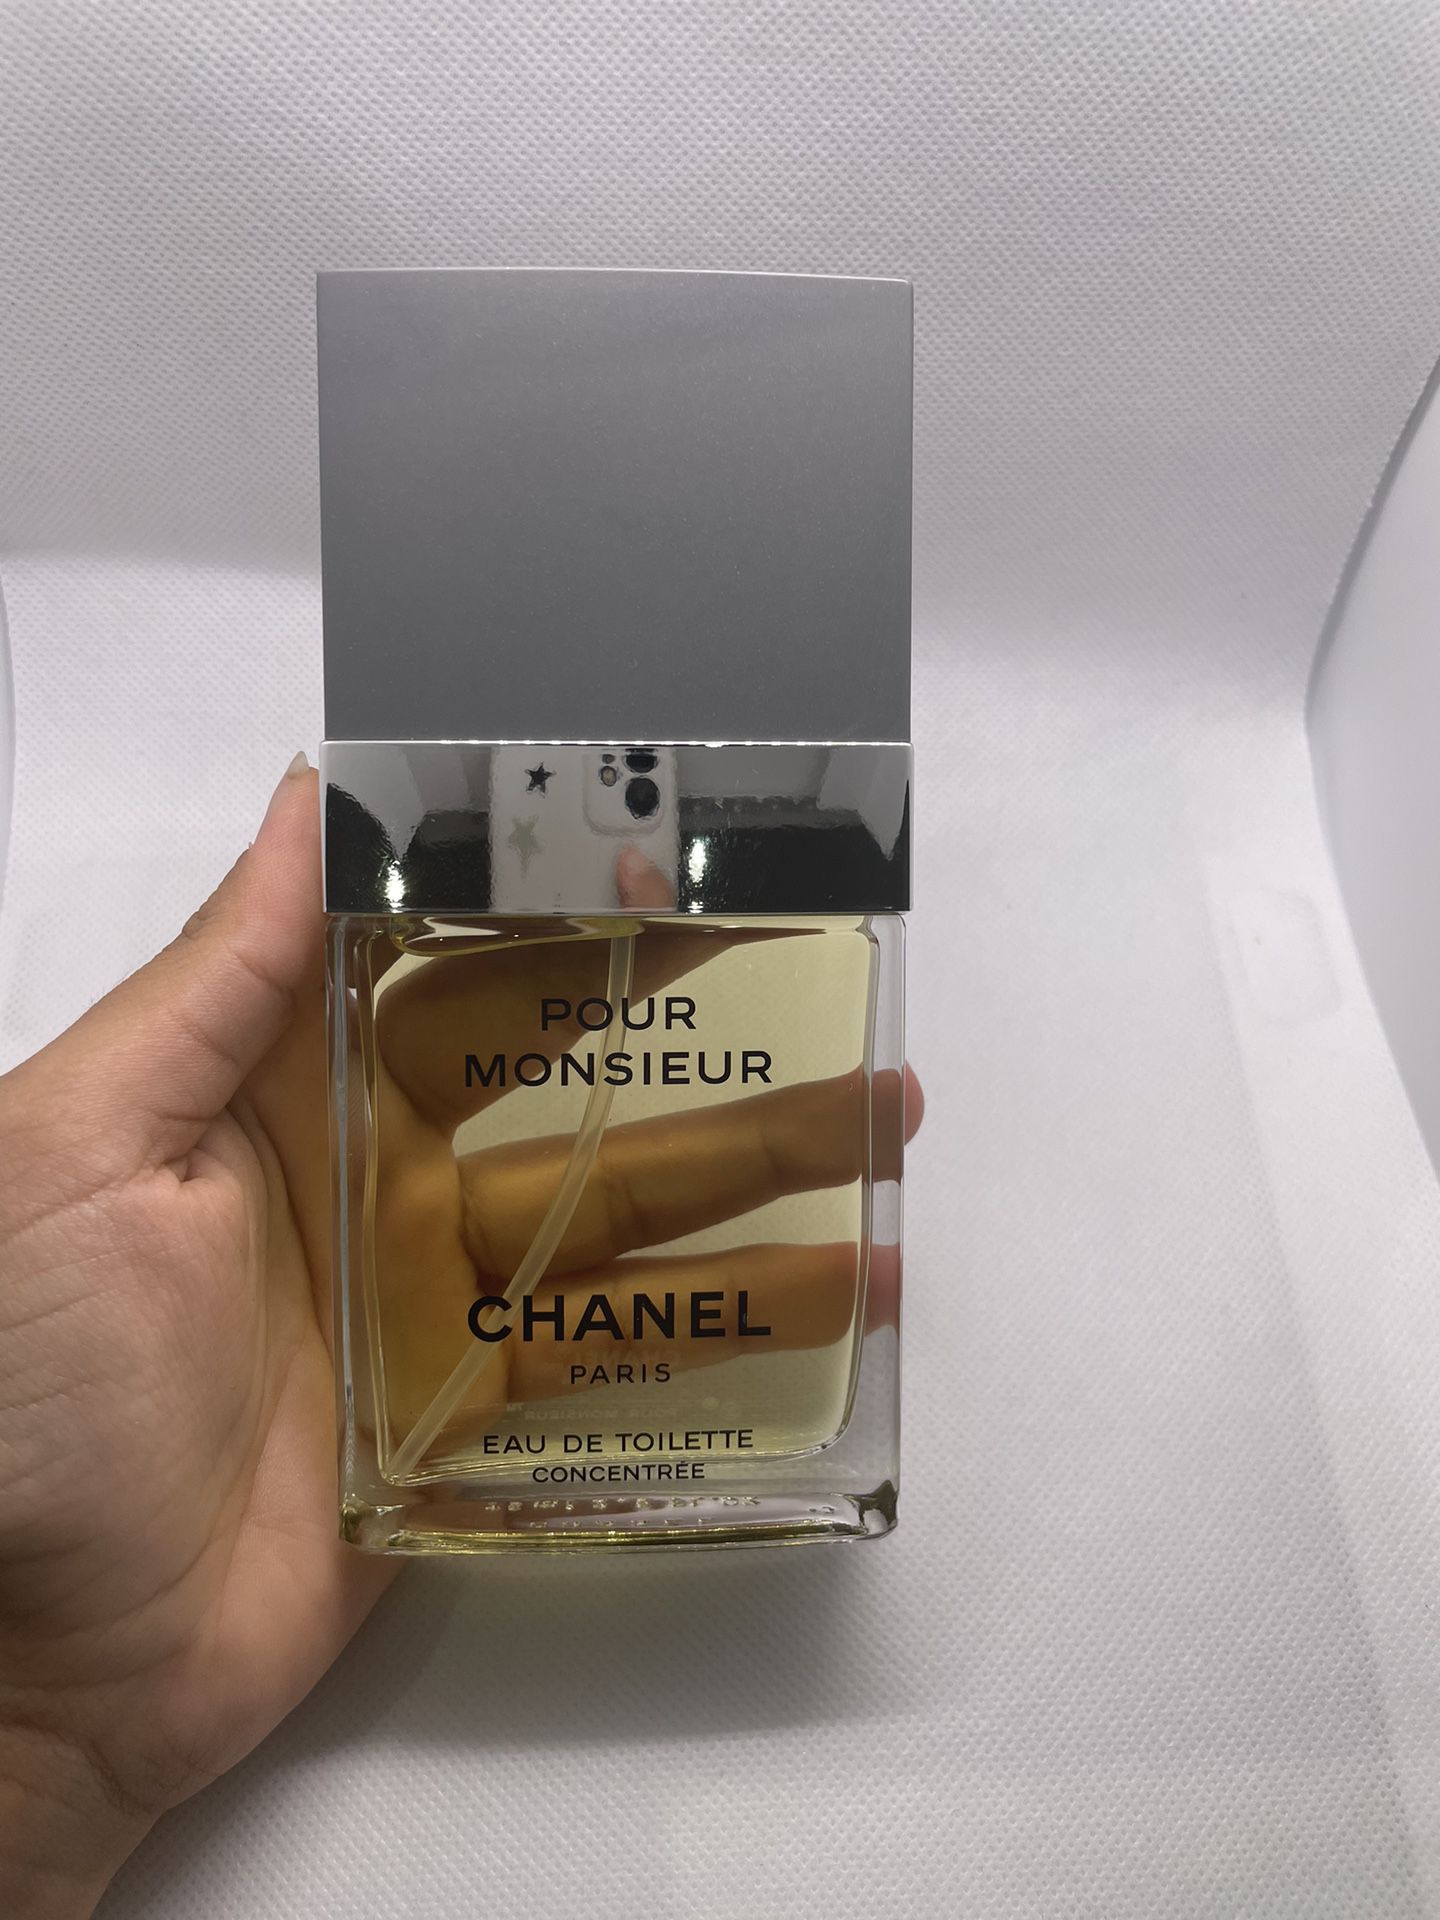 Pour Monsieur Chanel Paris Perfume